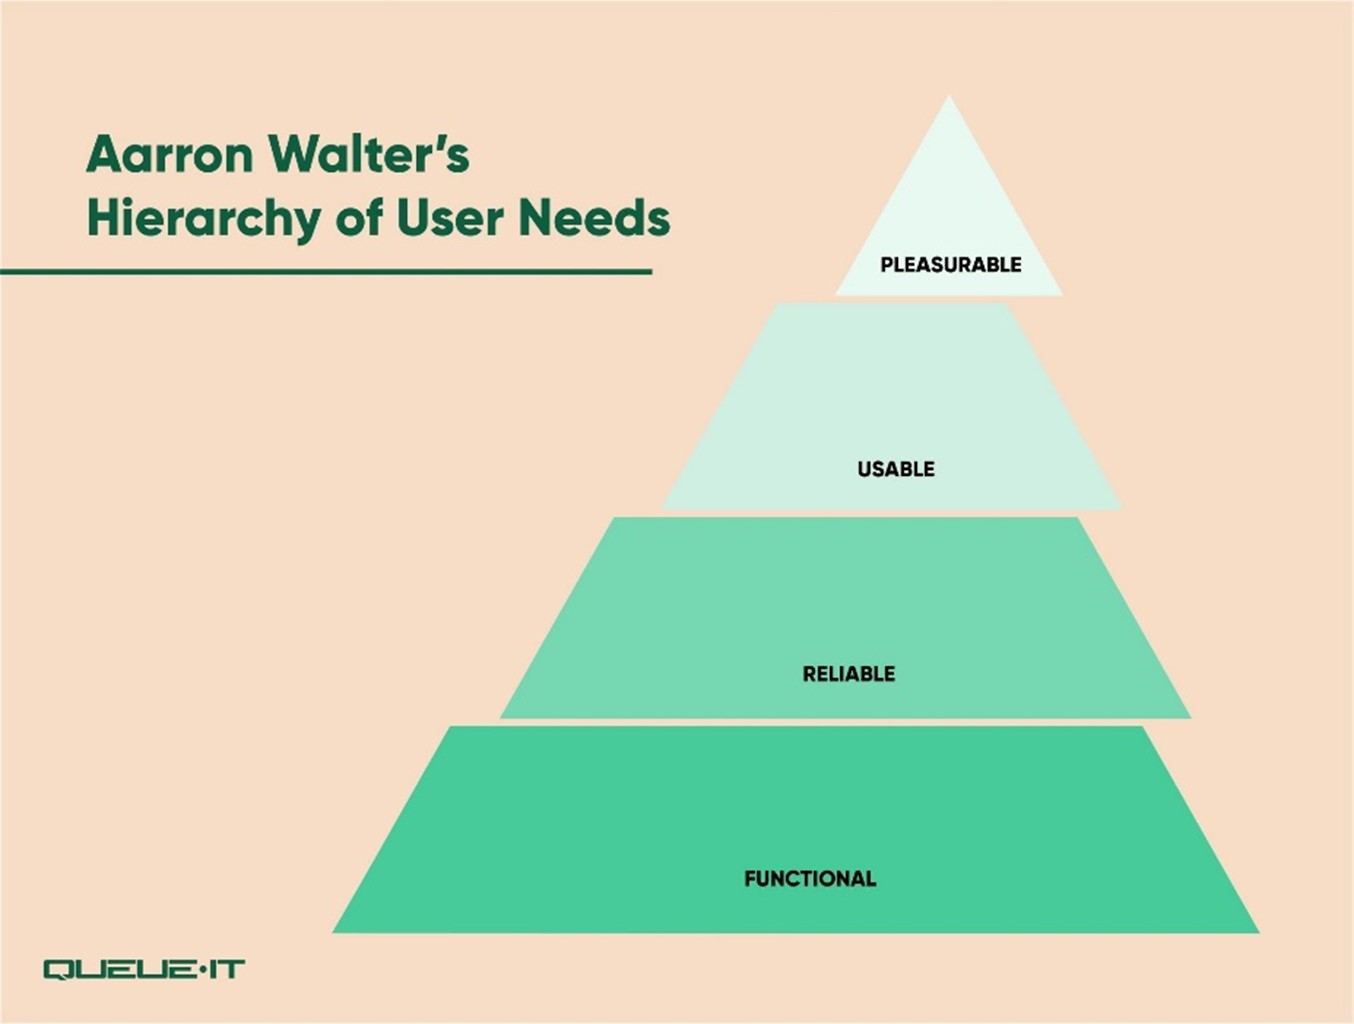 Aarron Walter's Hierarchy of user needs